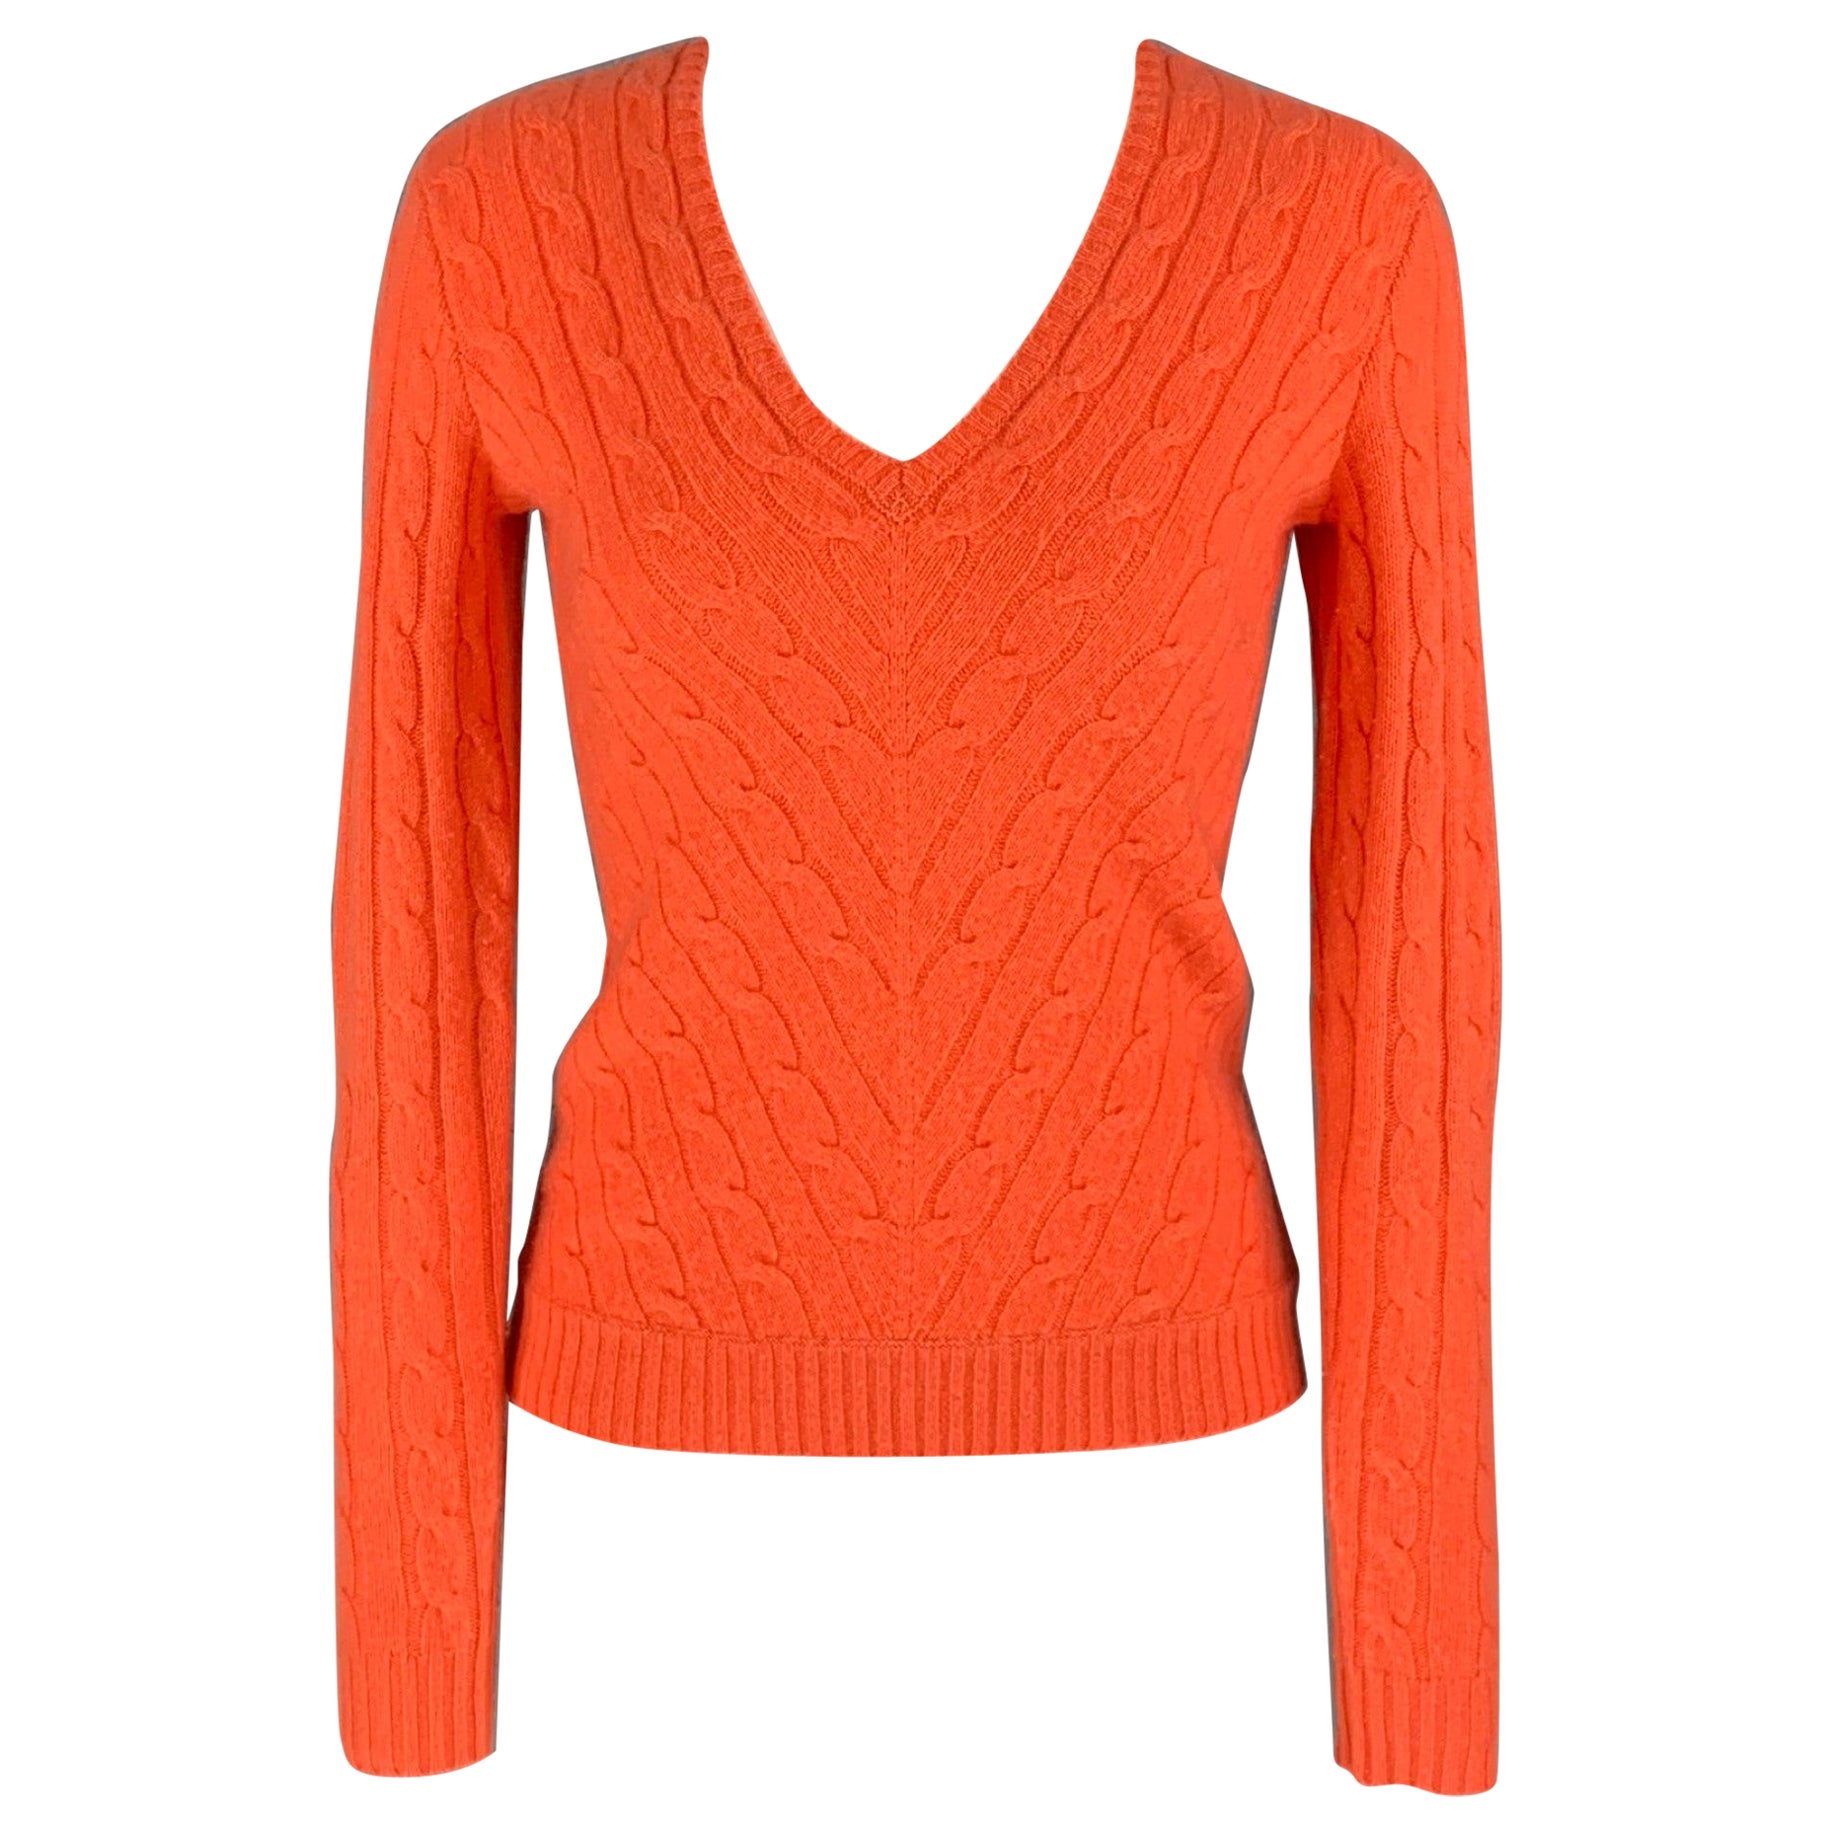 RALPH LAUREN Black Label Size S Orange Cable Knit Cashmere Pullover